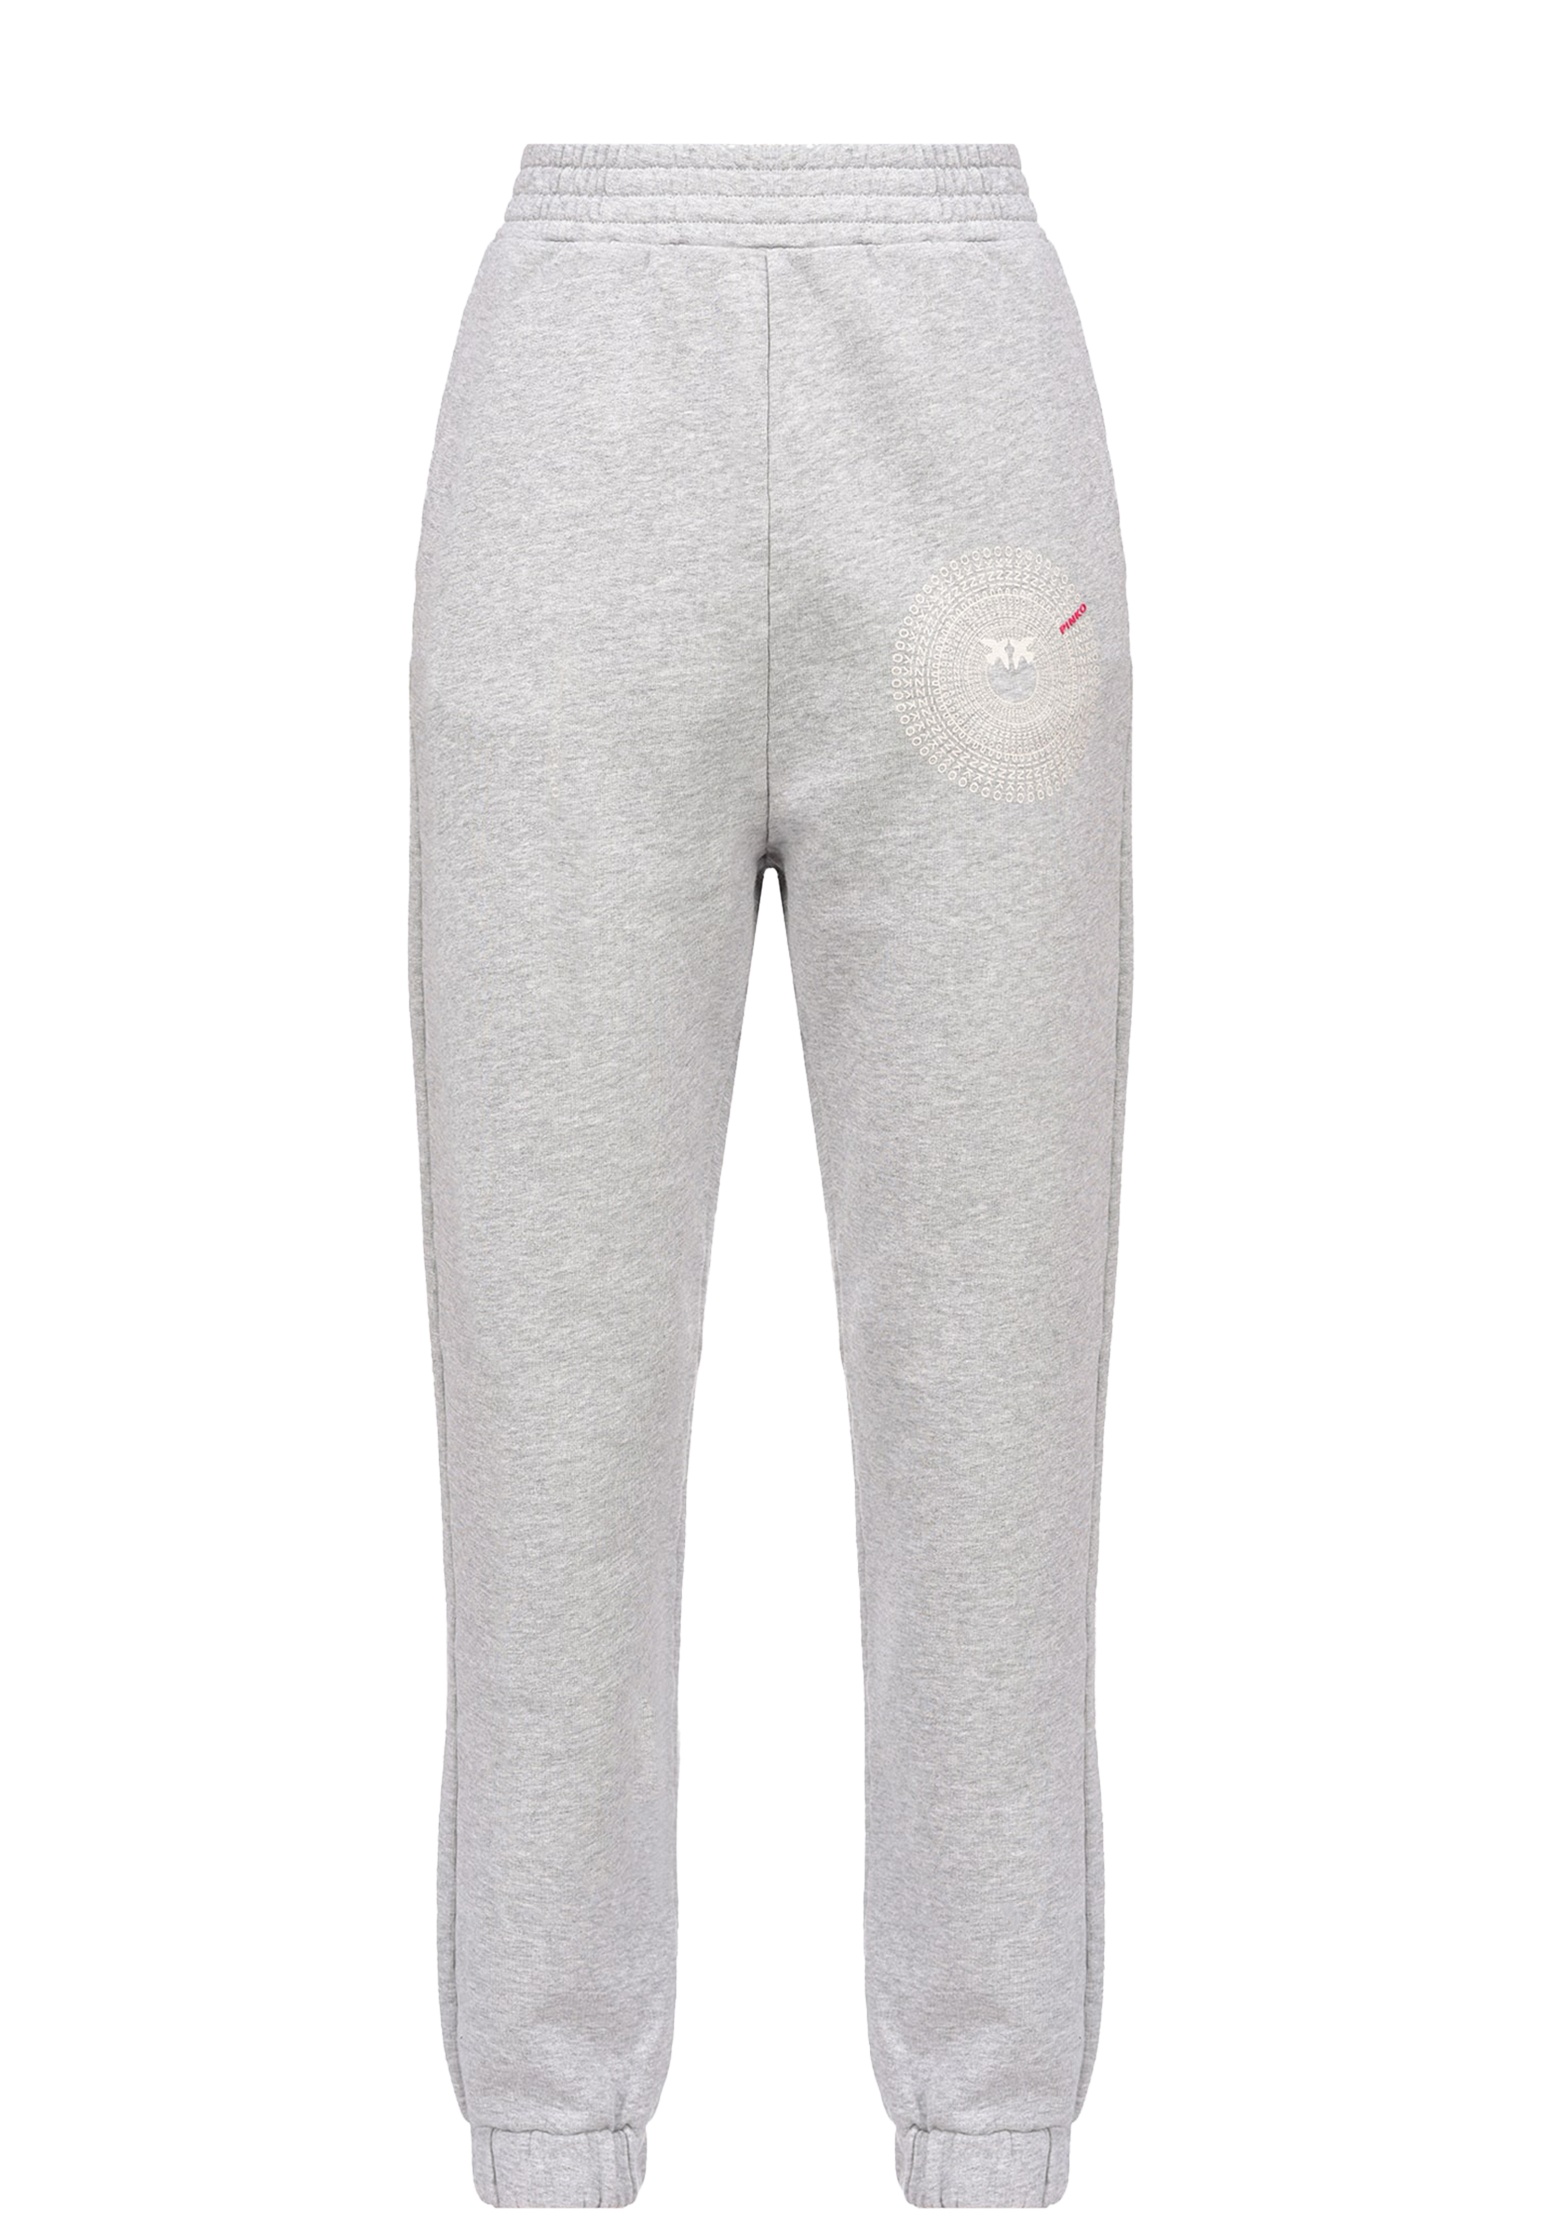 

Спортивные брюки женские Pinko 136957 серые L, Серый, 136957